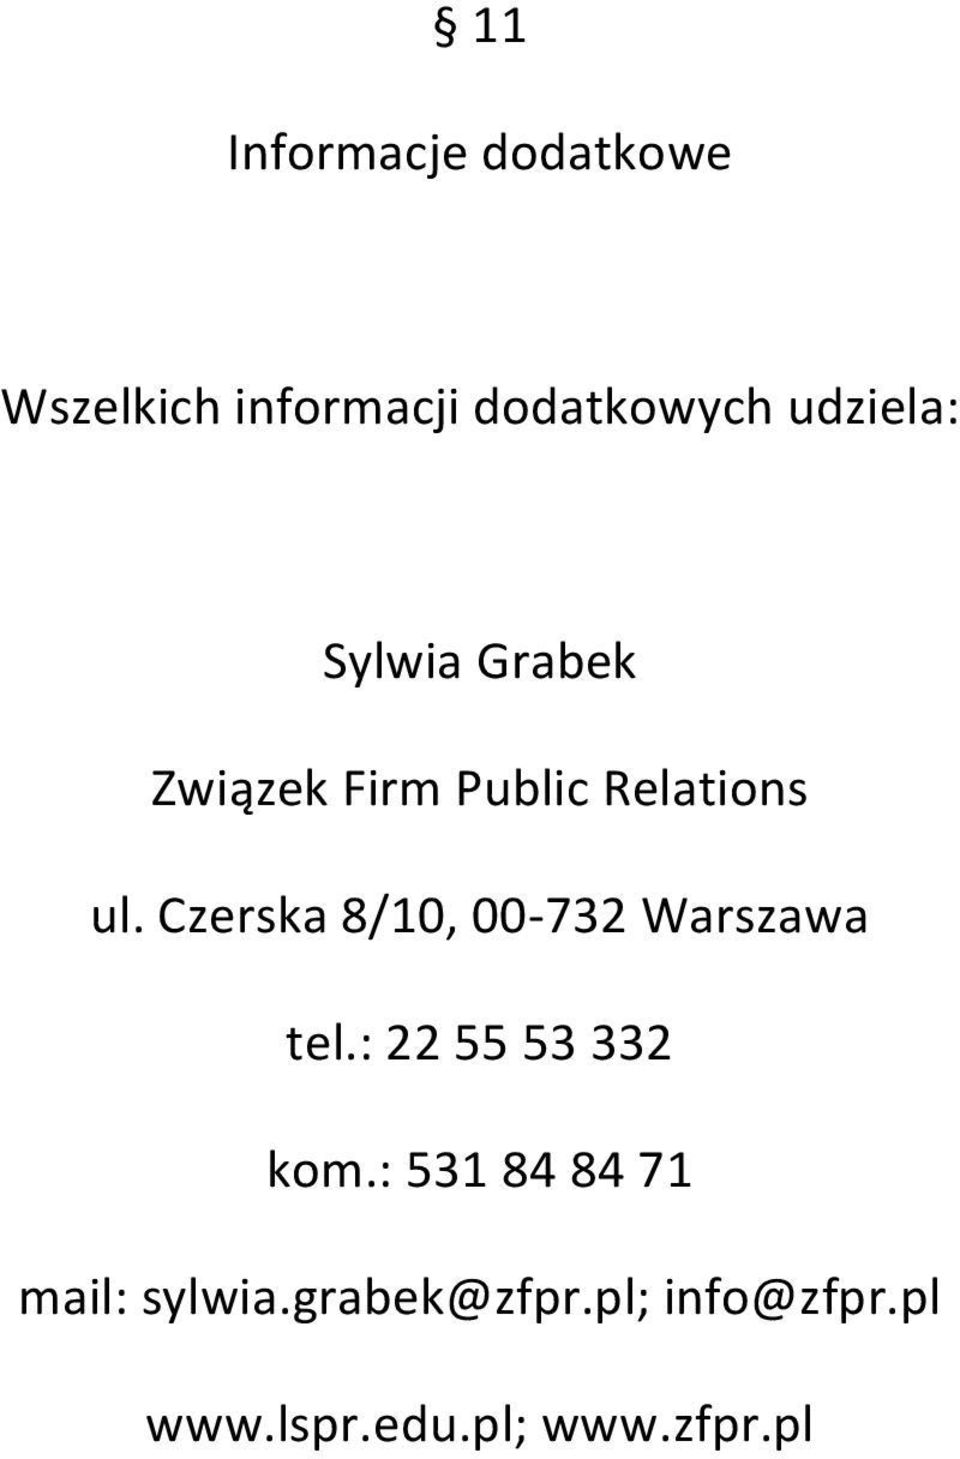 Czerska 8/10, 00-732 Warszawa tel.: 22 55 53 332 kom.